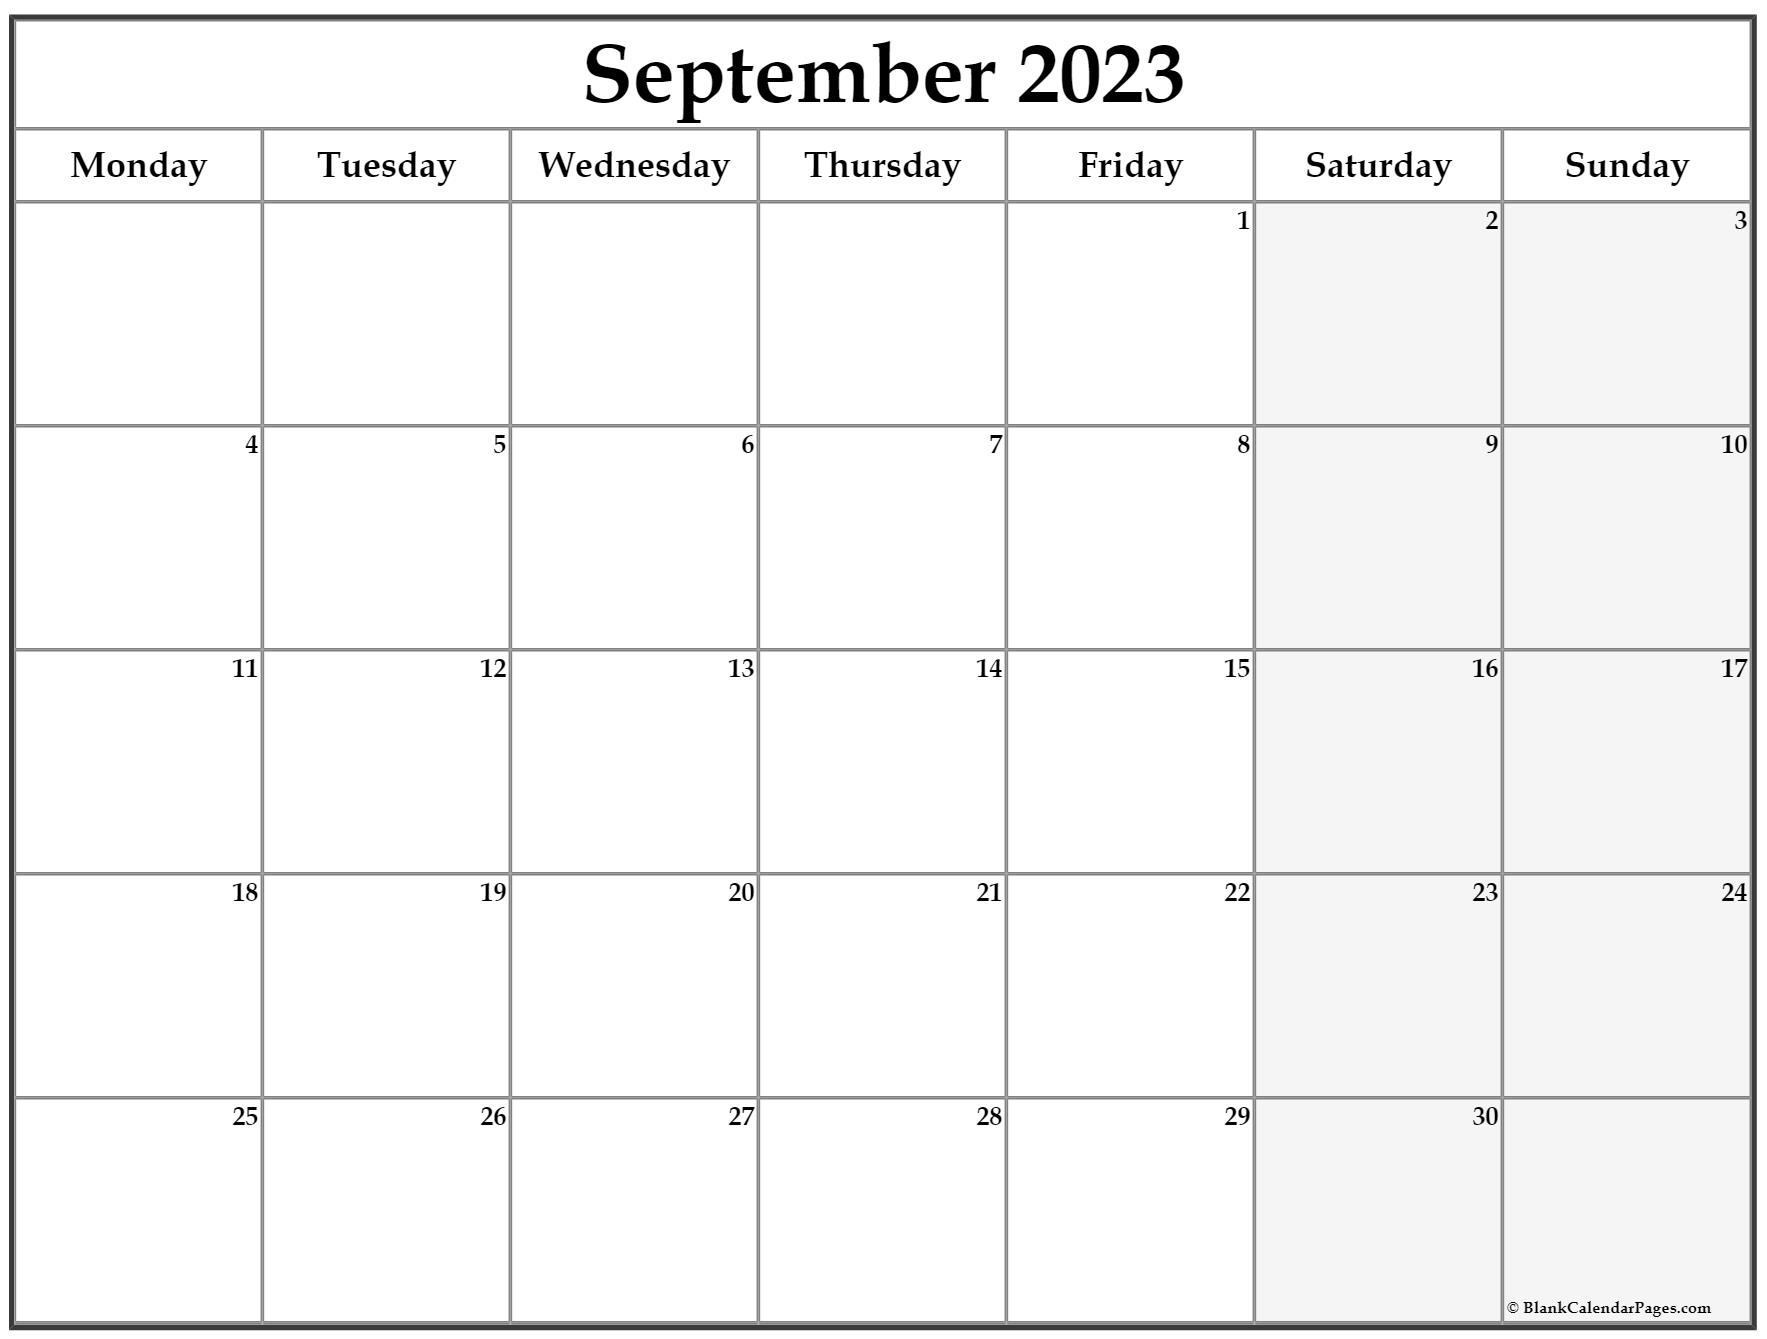 september-2023-calendar-starting-monday-get-calendar-2023-update